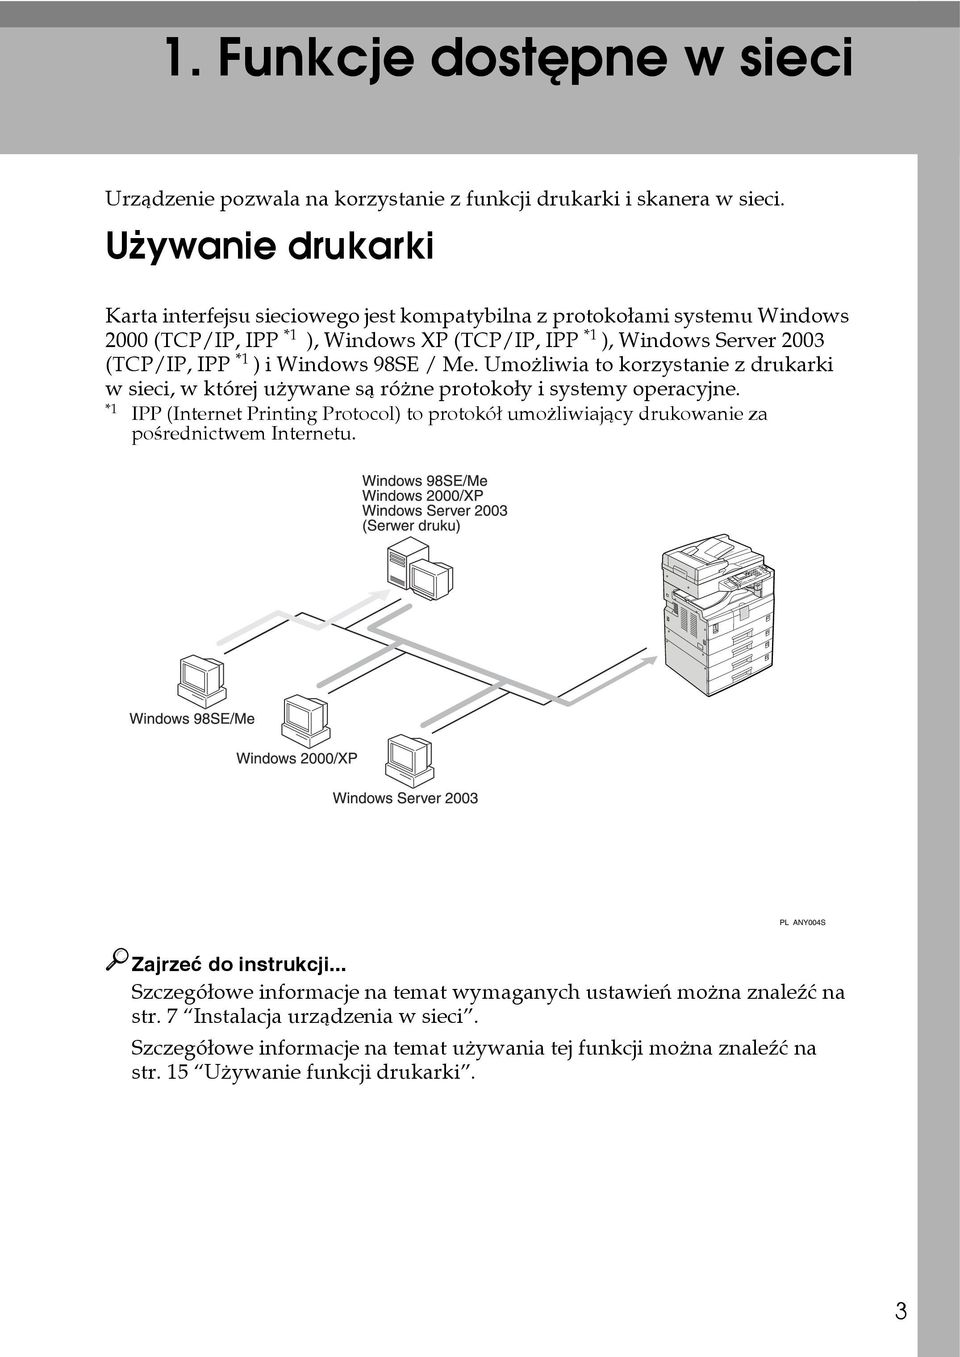 Windows 98SE / Me. Umoåliwia to korzystanie z drukarki w sieci, w której uåywane sà róåne protokoây i systemy operacyjne.